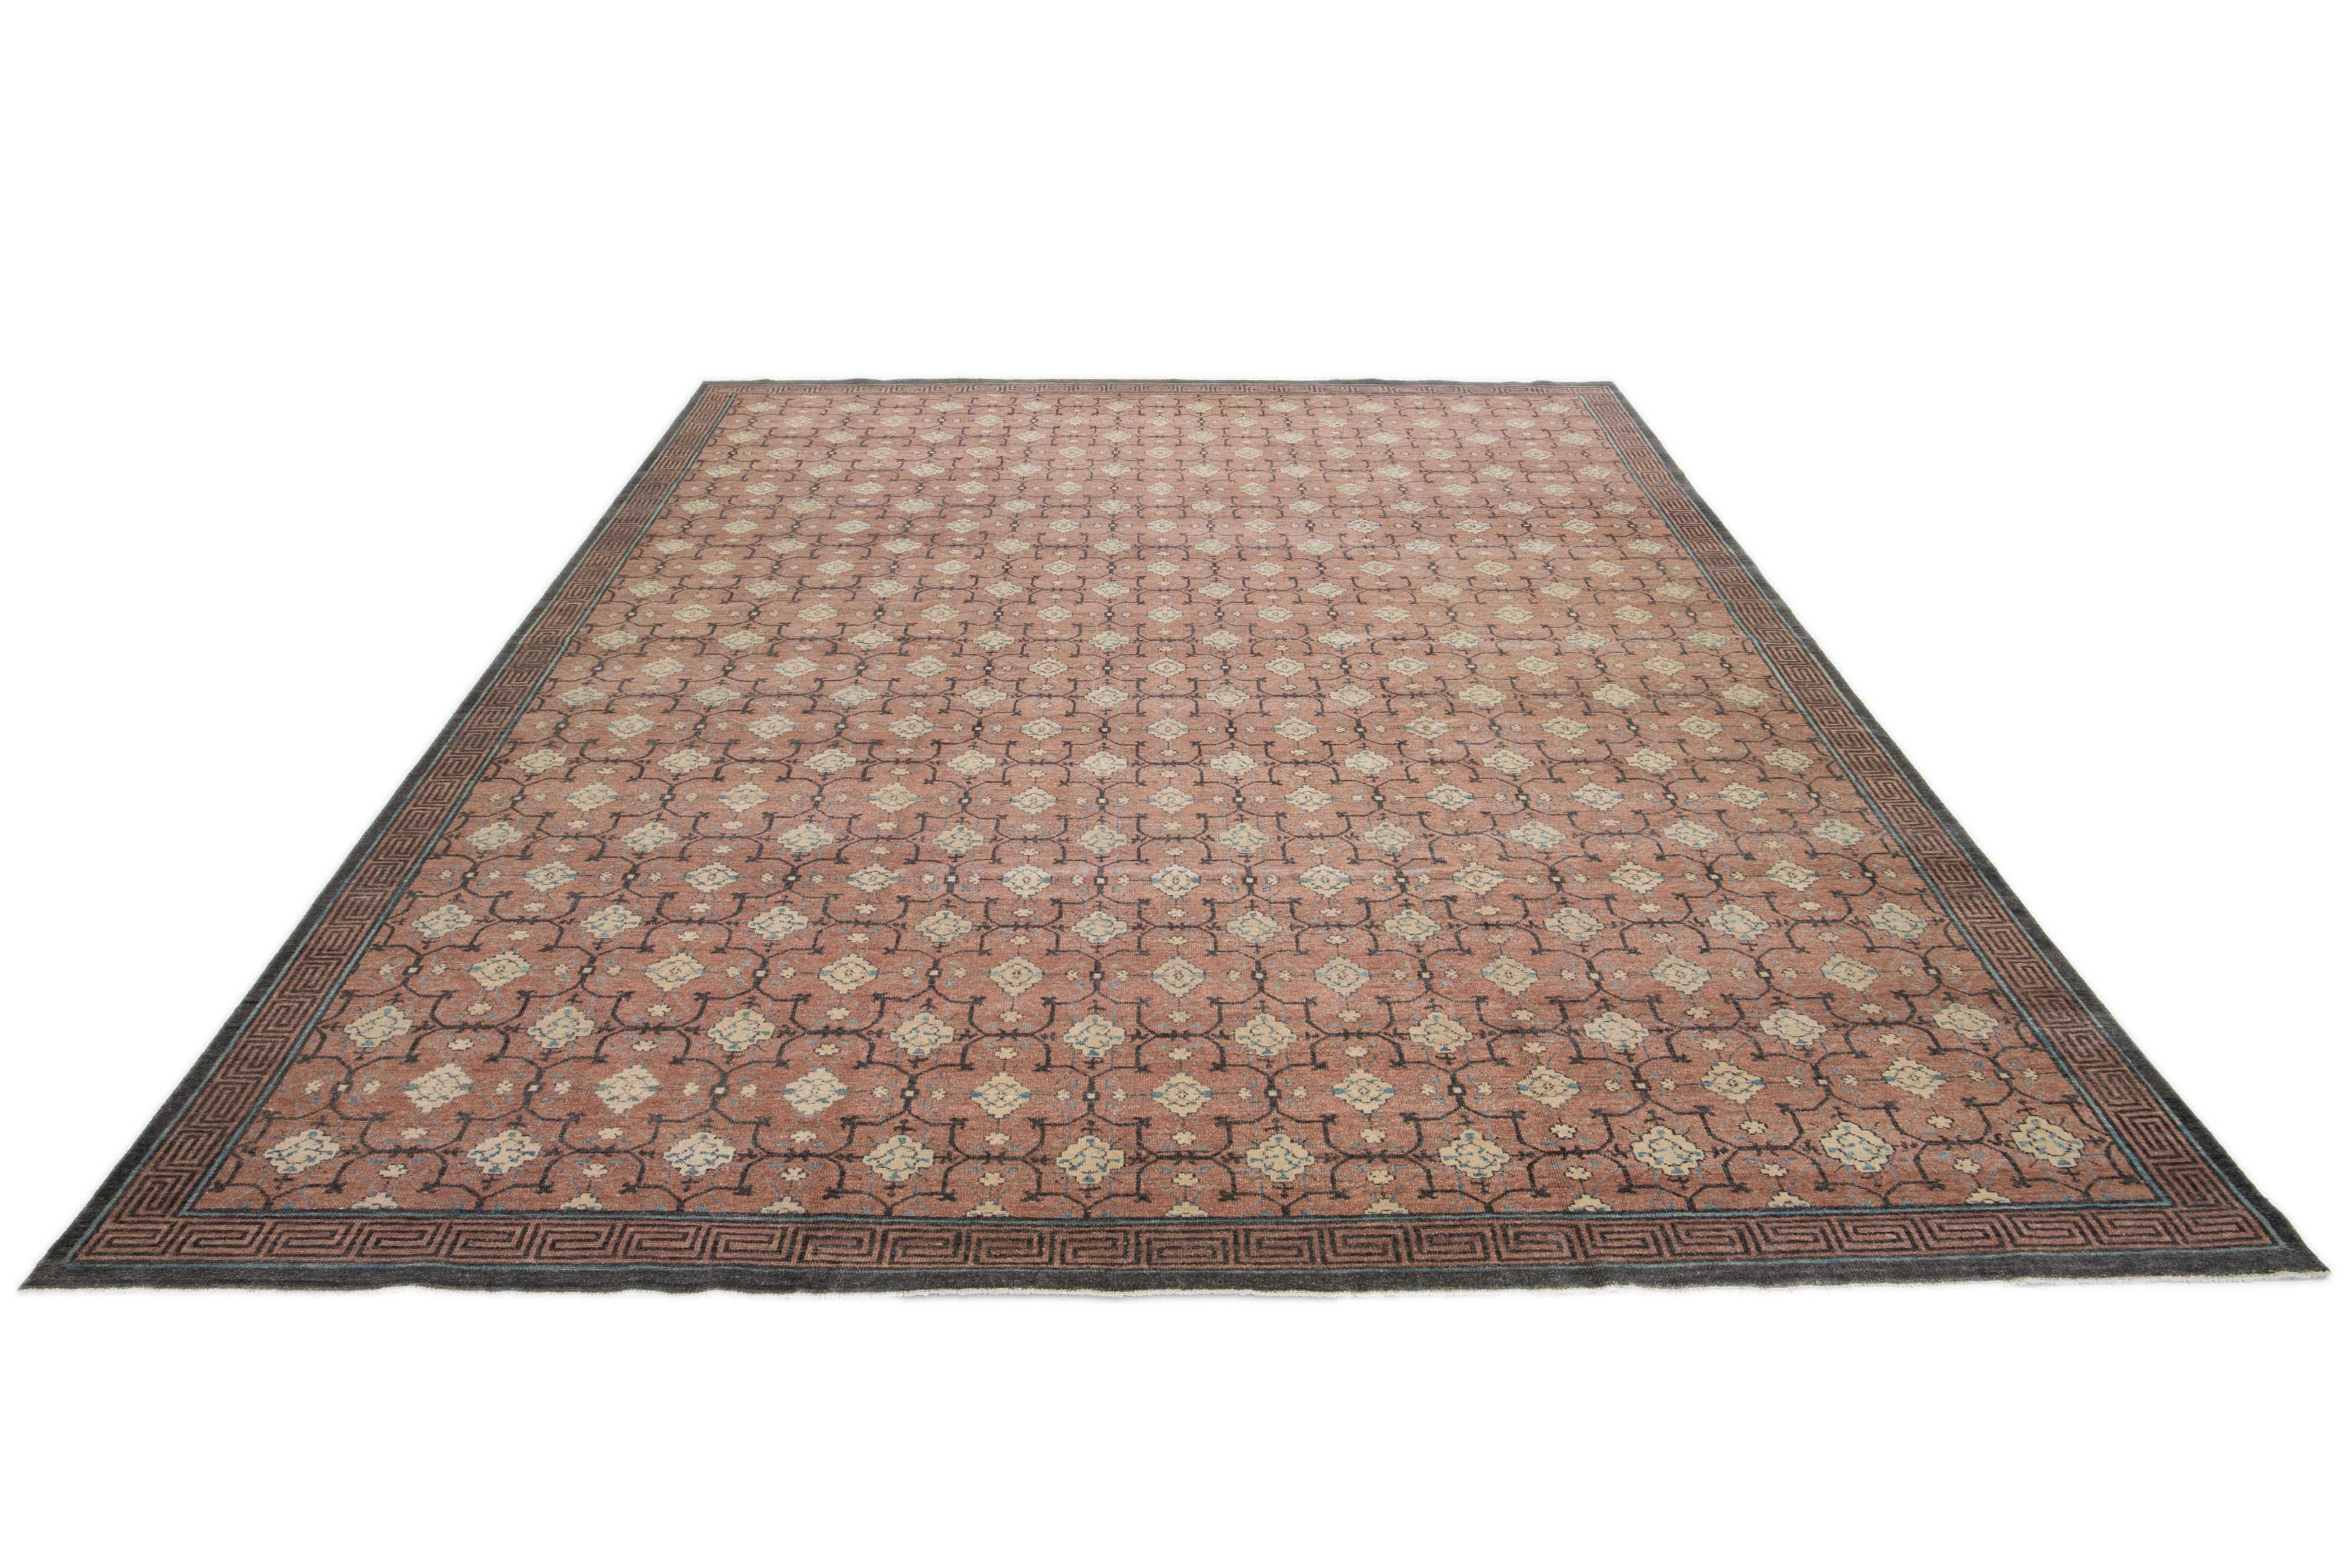 Ein Khotan-Wollteppich in einem pfirsichbraunen Farbfeld mit miteinander verbundenen Rosettenmustern. Dieses handgeknüpfte moderne Stück hat beige und graue Akzente, die das Design ergänzen.

Dieser Teppich misst 11'11